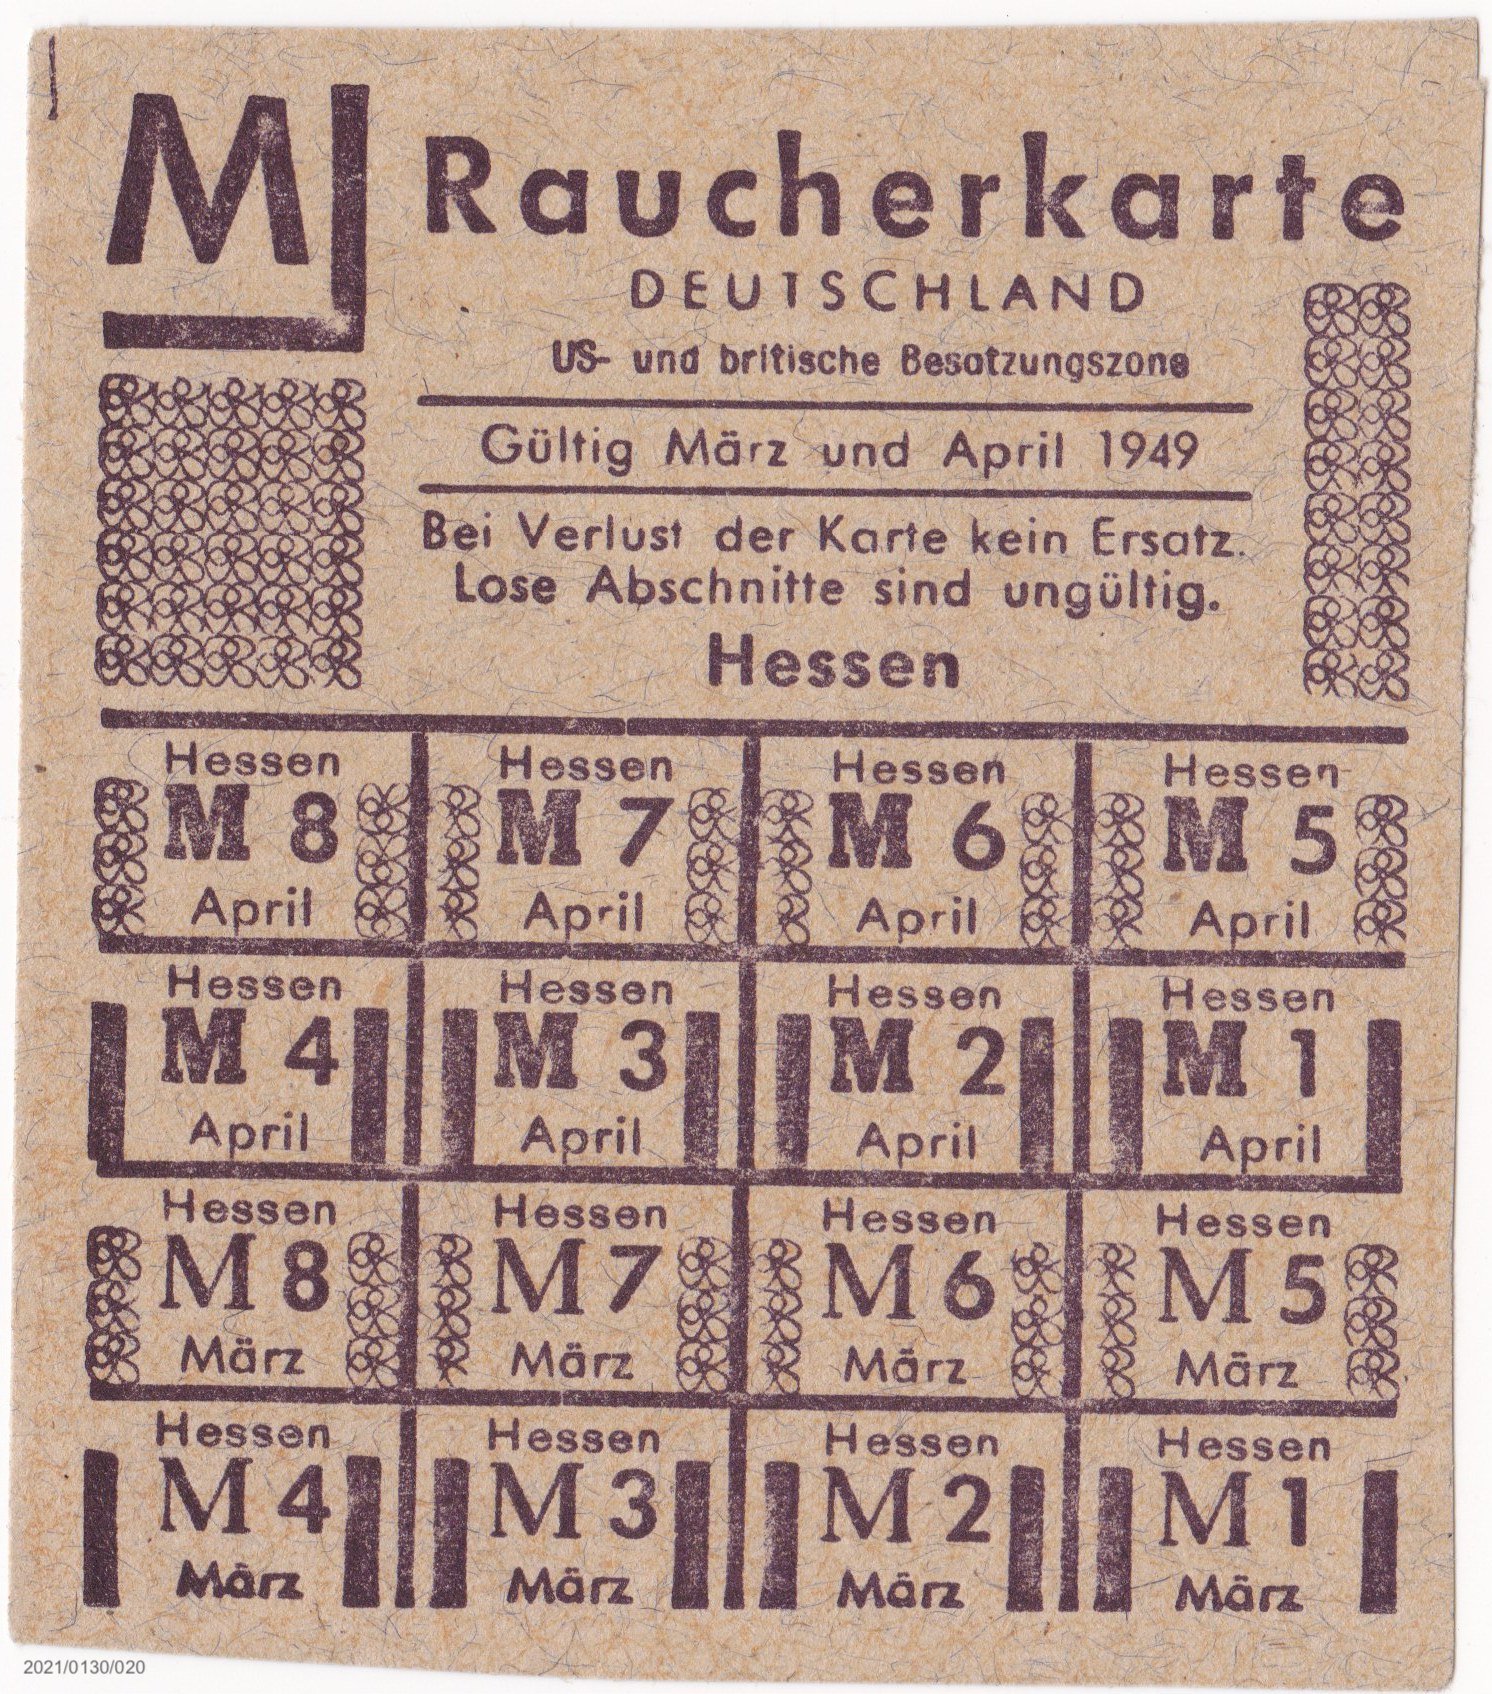 Raucherkarte Deutschland US- und britische Besatzungszone März und April 1949 (Museumsgesellschaft Bad Dürkheim e. V. CC BY-NC-SA)